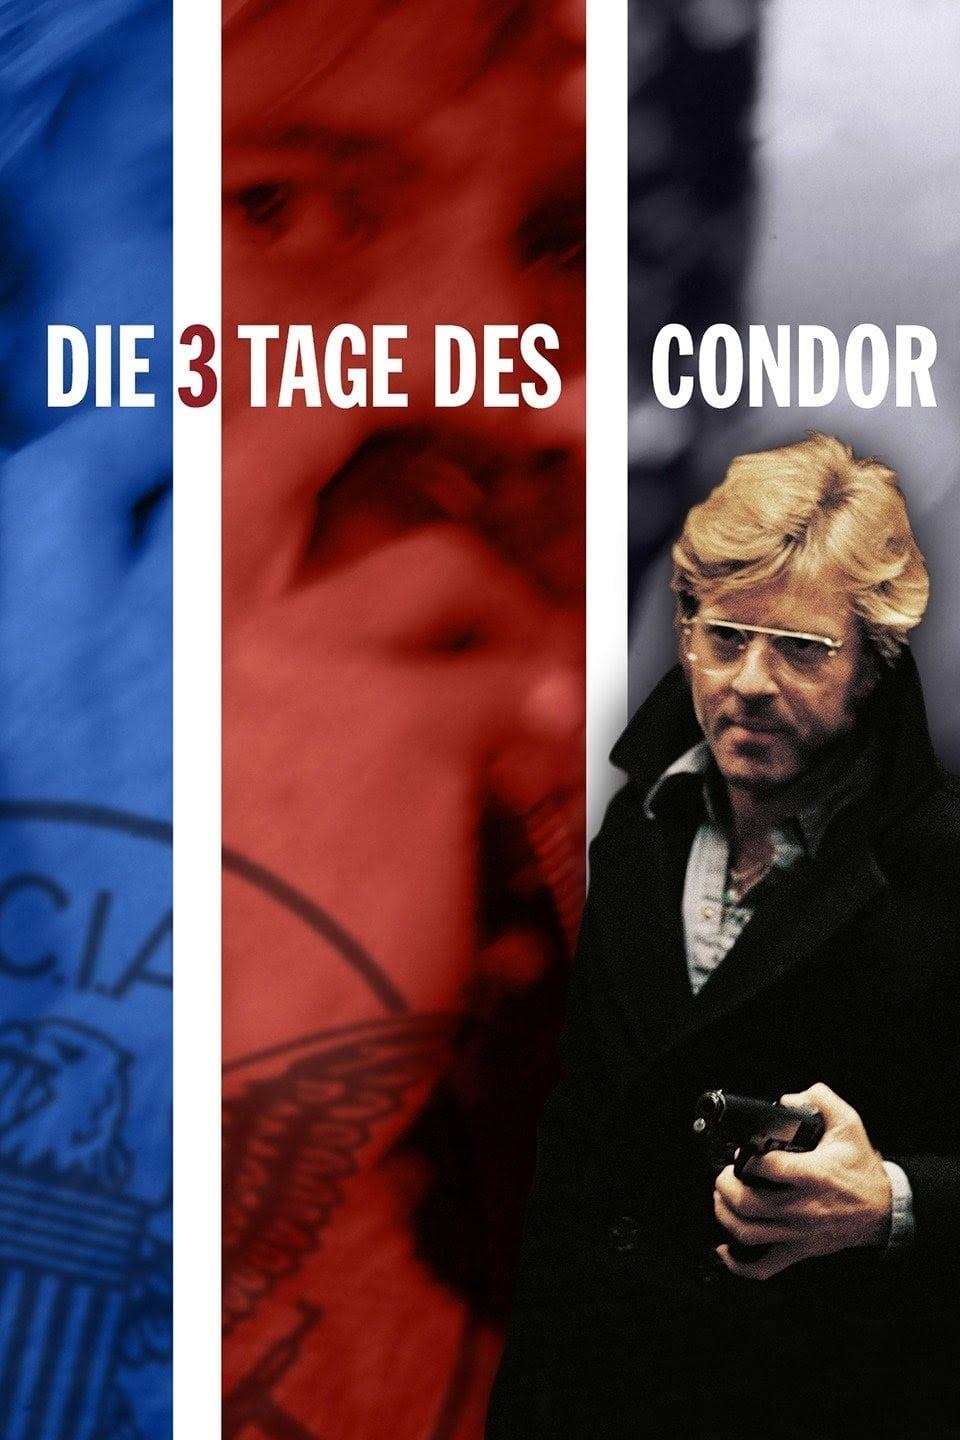 Die drei Tage des Condor poster